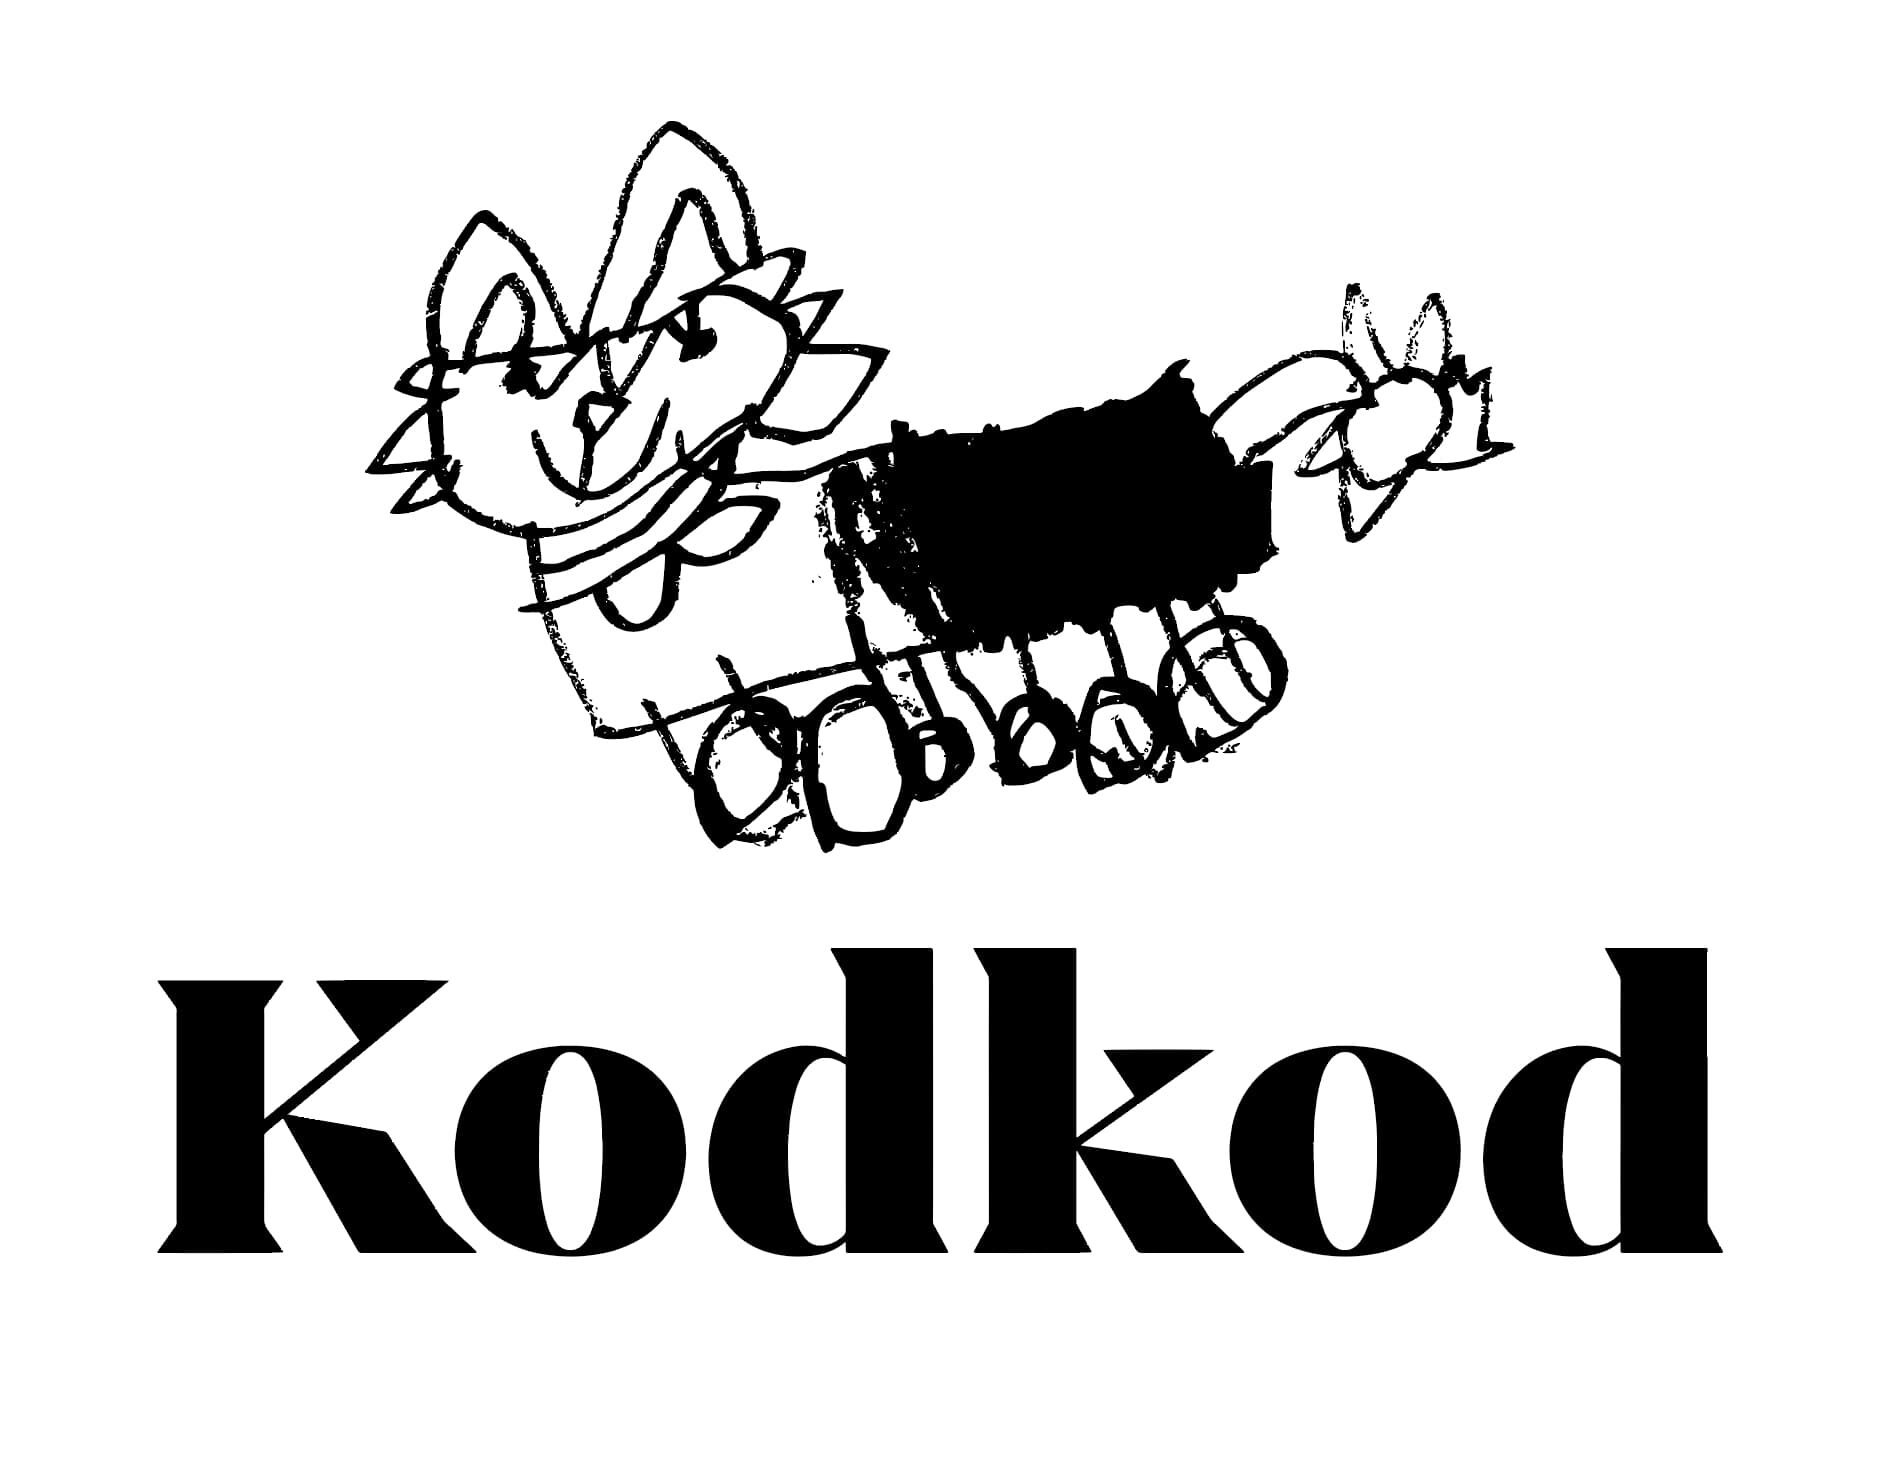 kodkodwine.com